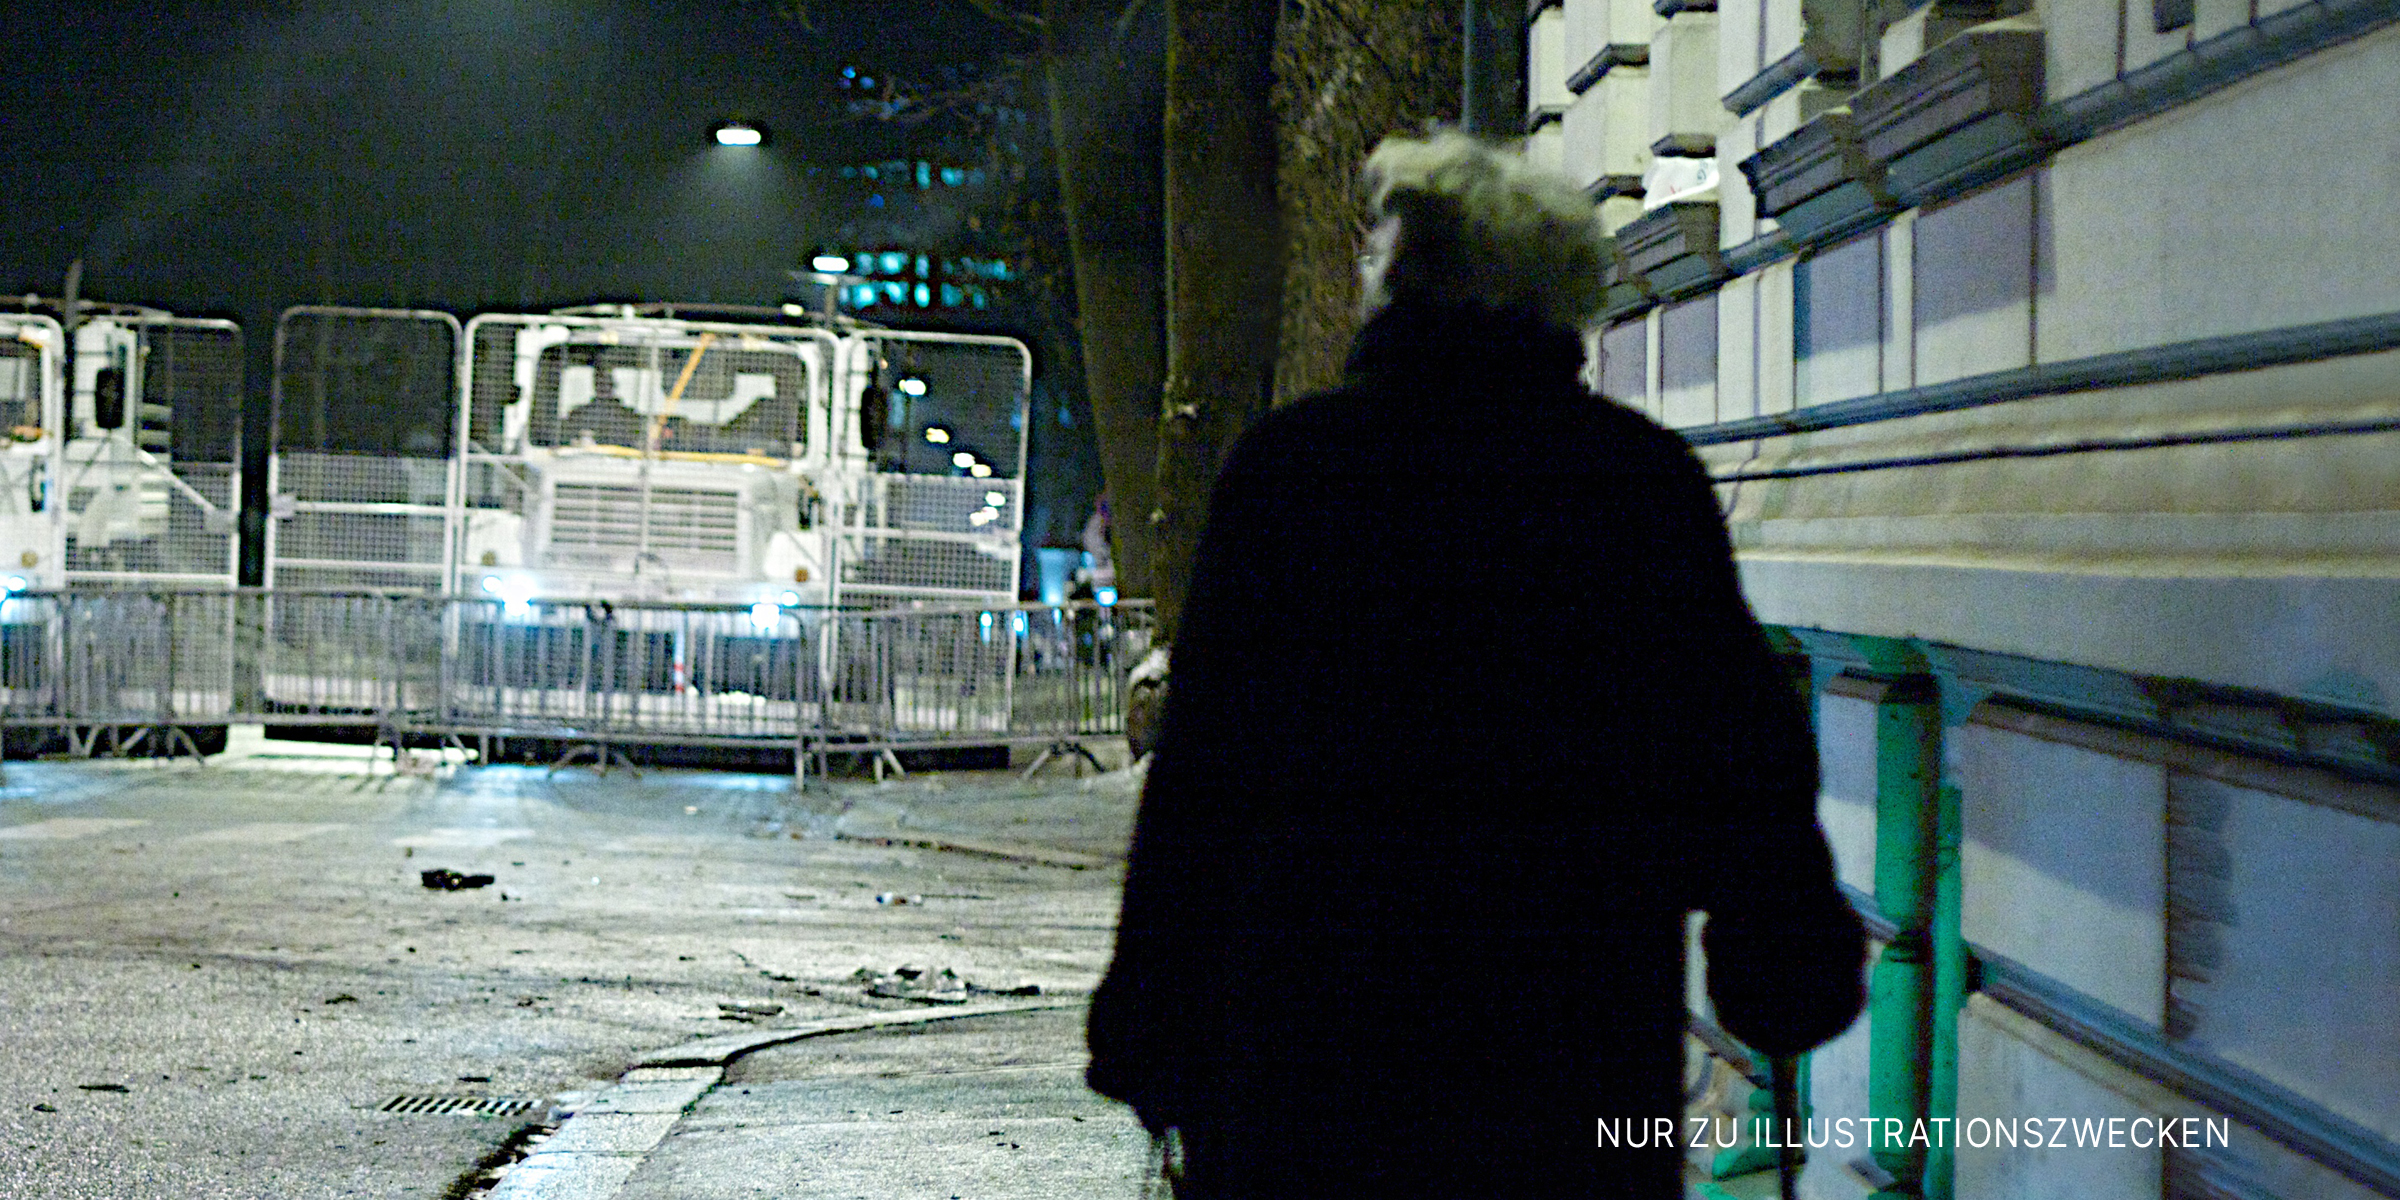 Eine Person, die nachts auf einer Straße geht | Quelle: Flickr/Egil Fujikawa Nes (CC BY 2.0)